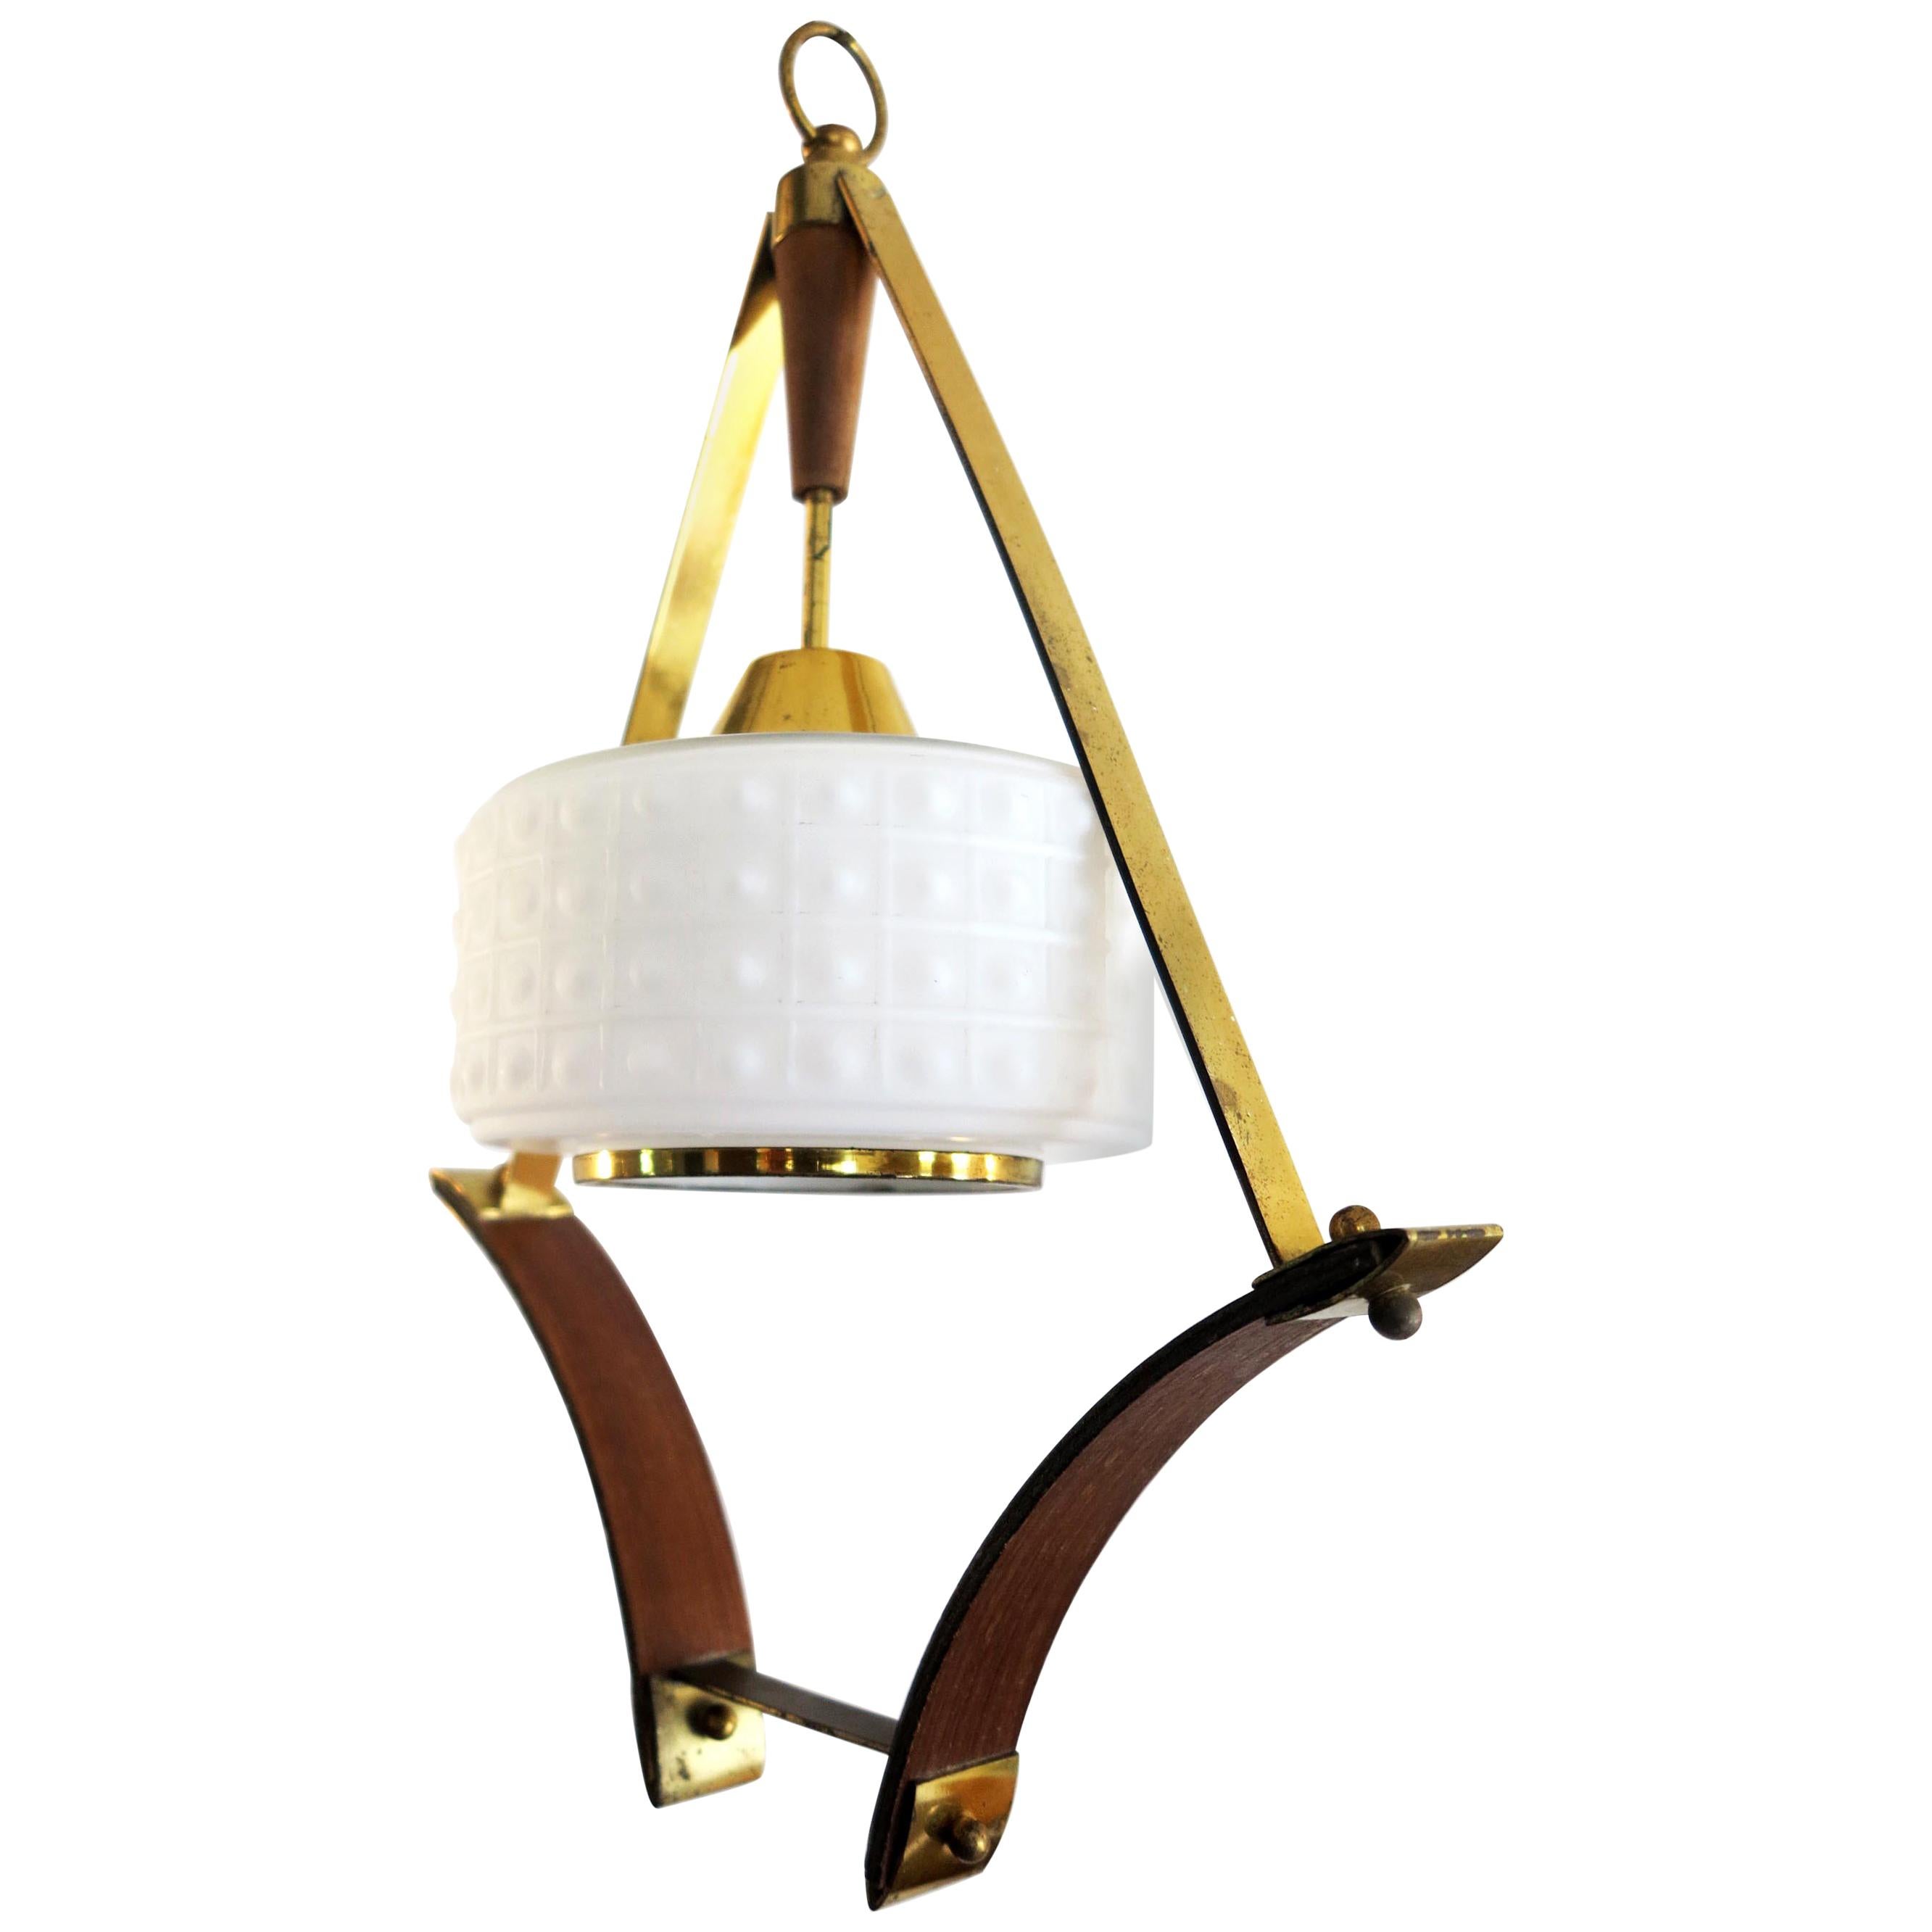 Scandinavian Pendant or Ceiling Lamp in Teak Wood Opaline Glass & Brass, 1950s For Sale